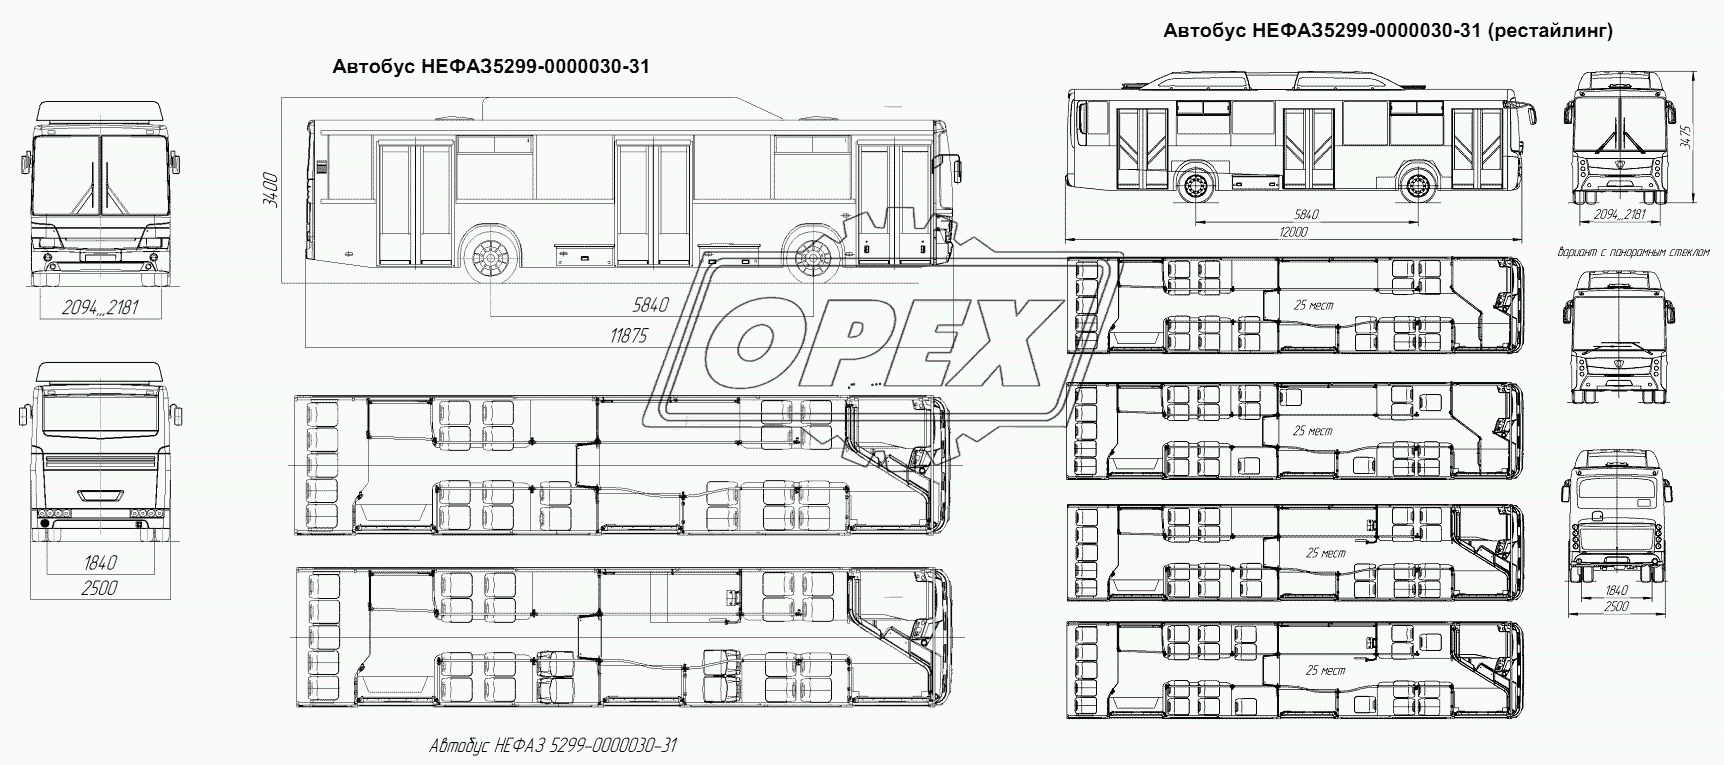 Автобус НЕФАЗ5299-0000030-31